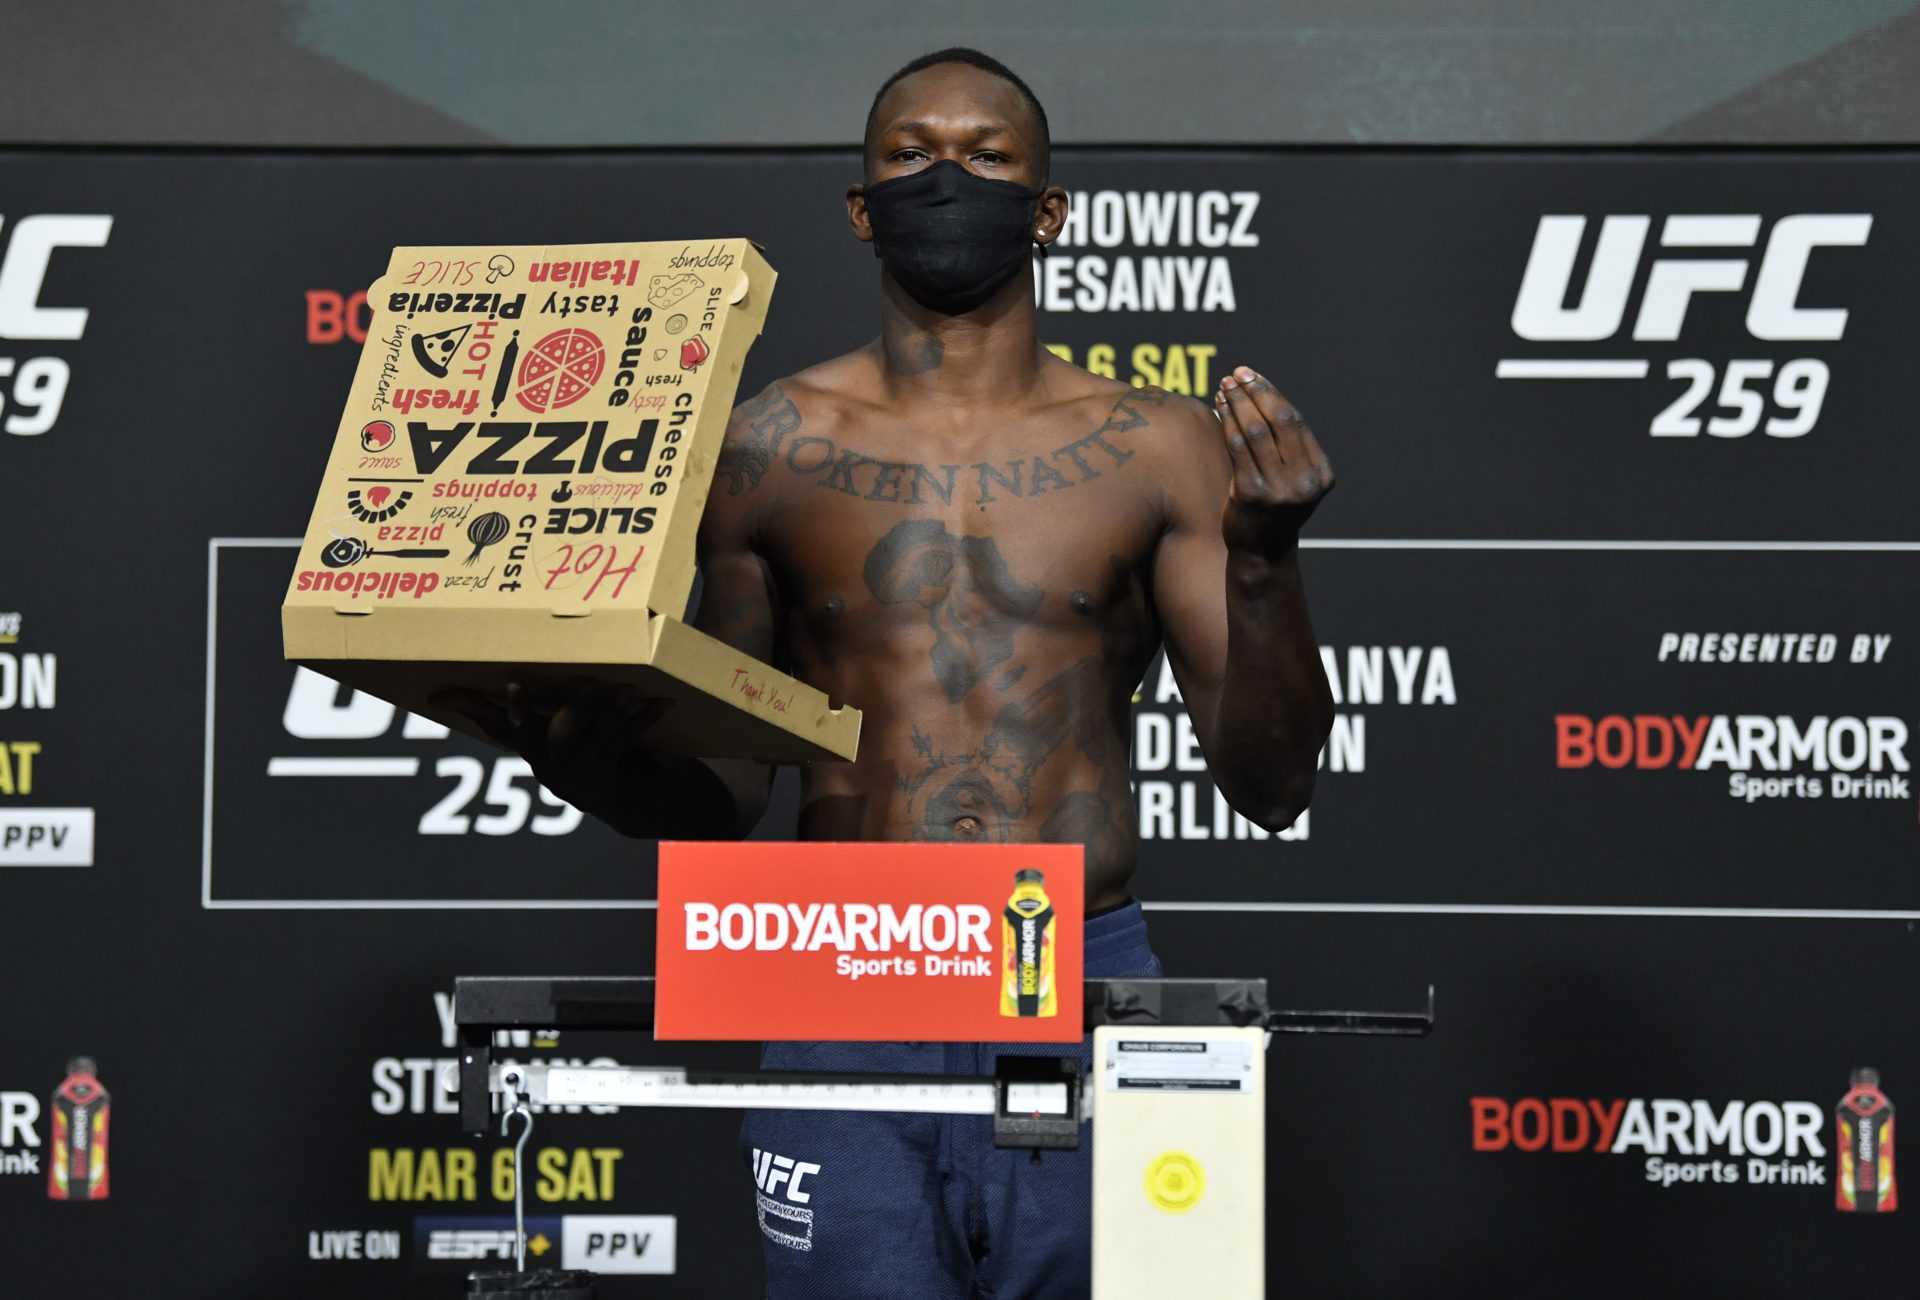 `` Je t'attends mon garçon! '' - Israel Adesanya reçoit un appel surprise après avoir tenu une boîte à pizza lors de la pesée de l'UFC 259